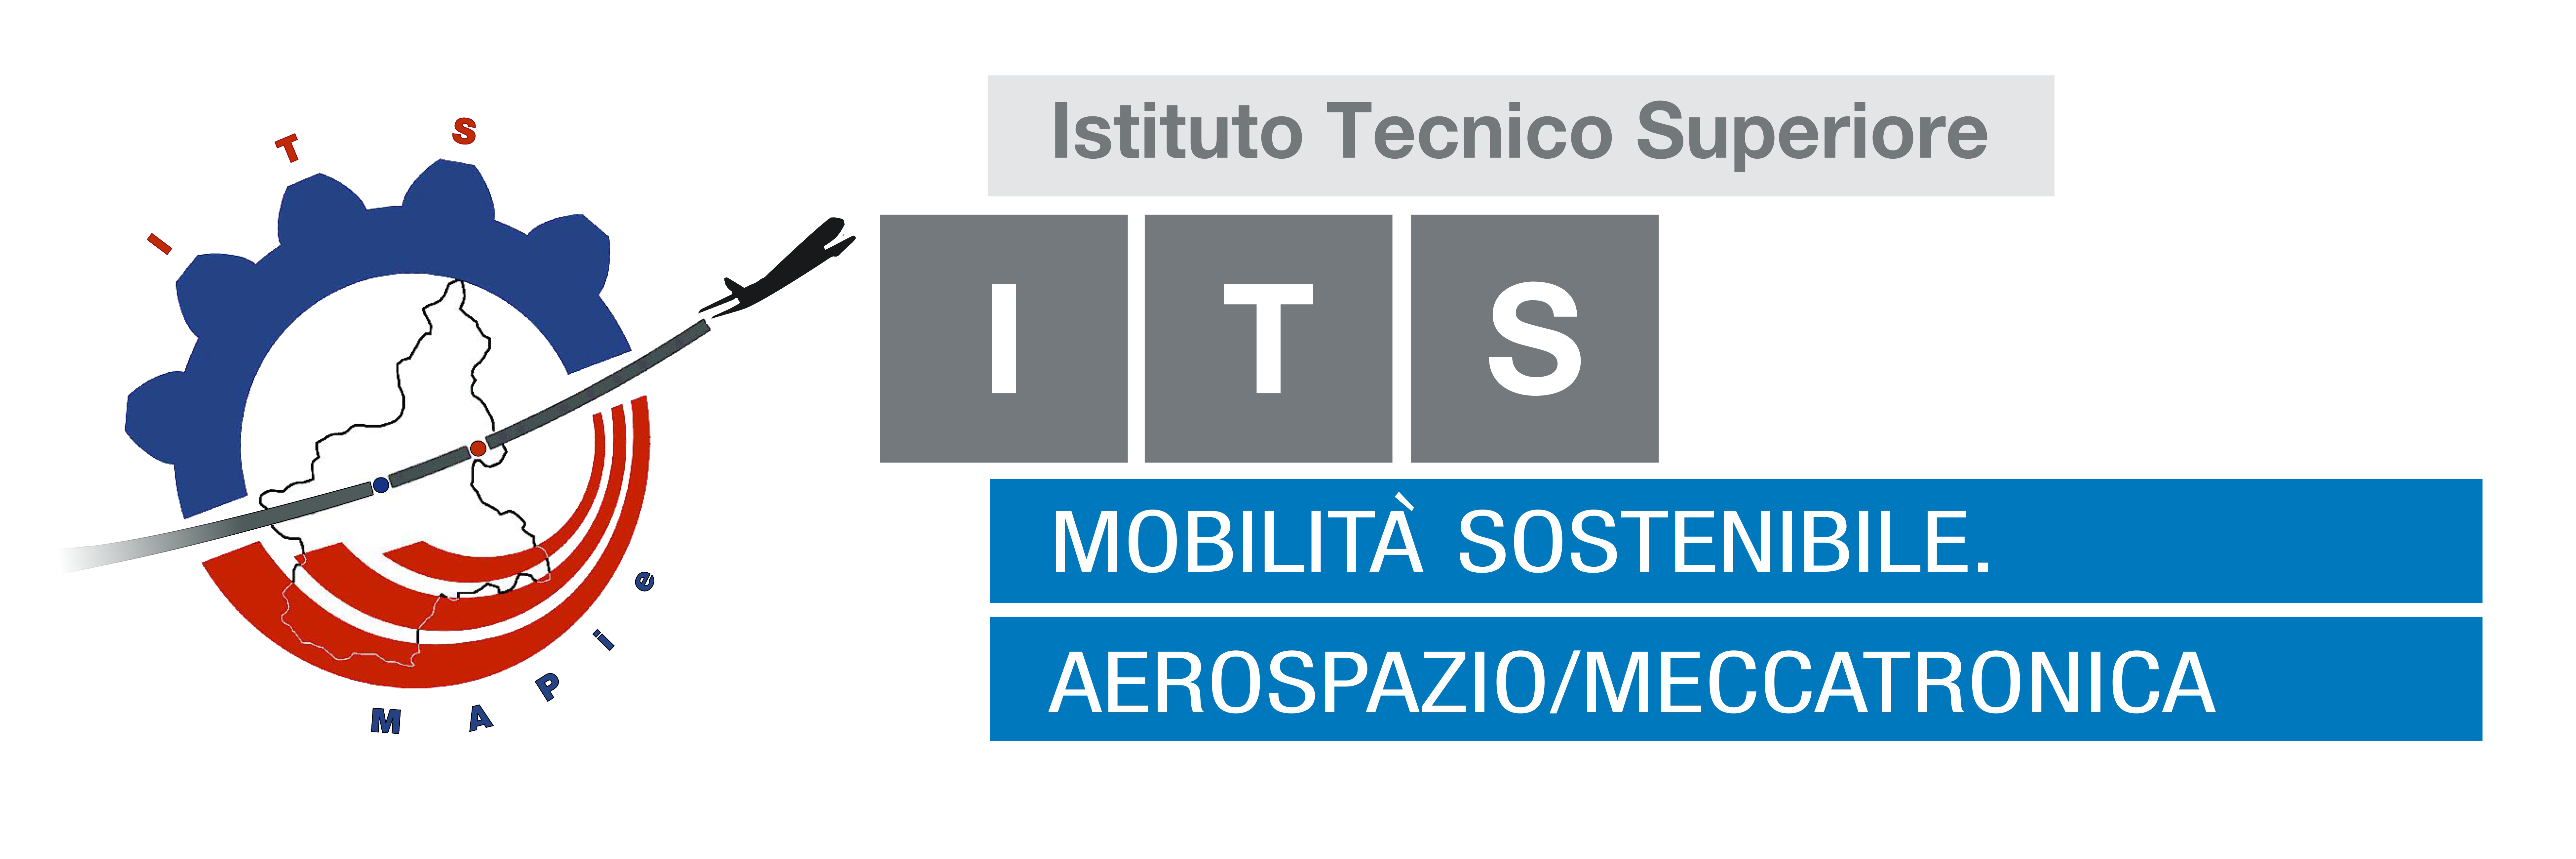 ITS Fondazione per la Mobilità Sostenibile AEROSPAZIO/MECCATRONICA del Piemonte